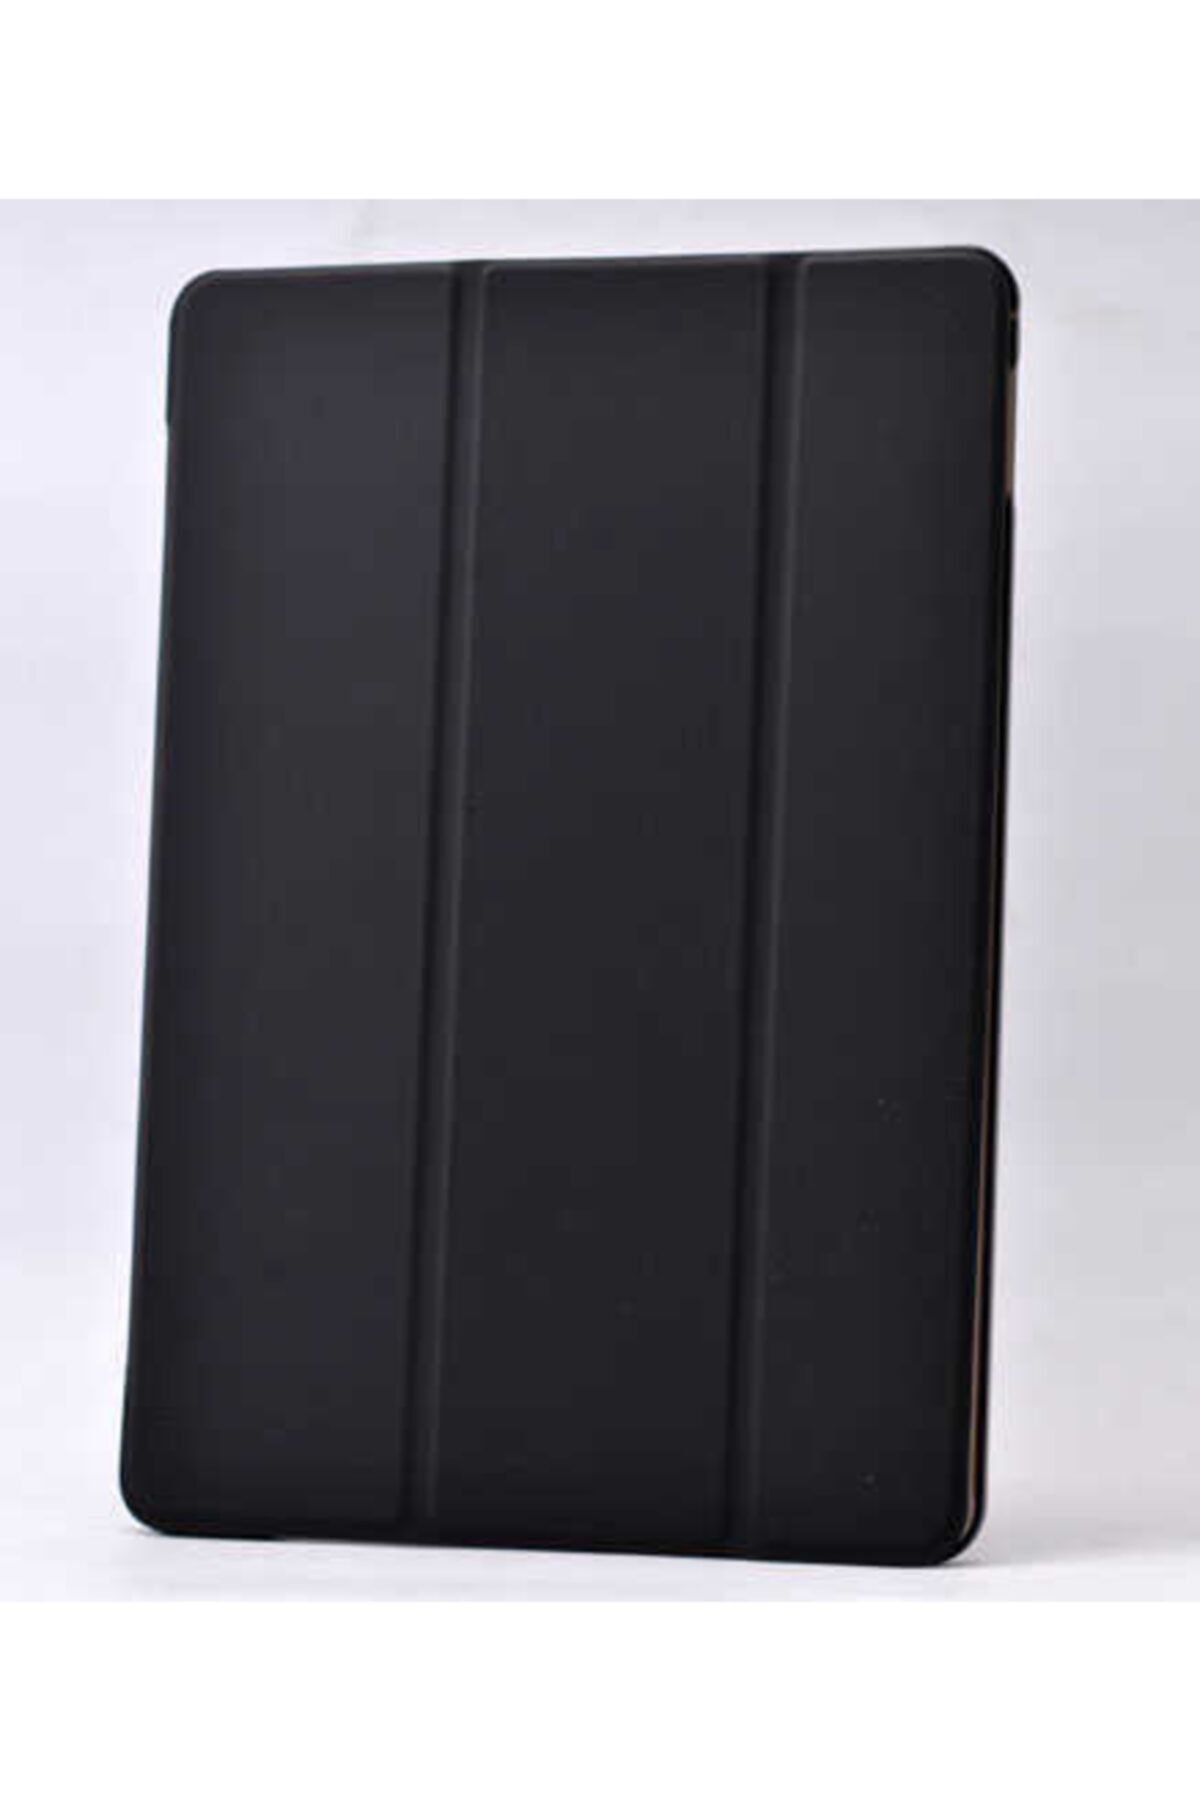 Dijimedia Galaxy T800 Tab S Smart Cover Standlı 1-1 Kılıf Siyah